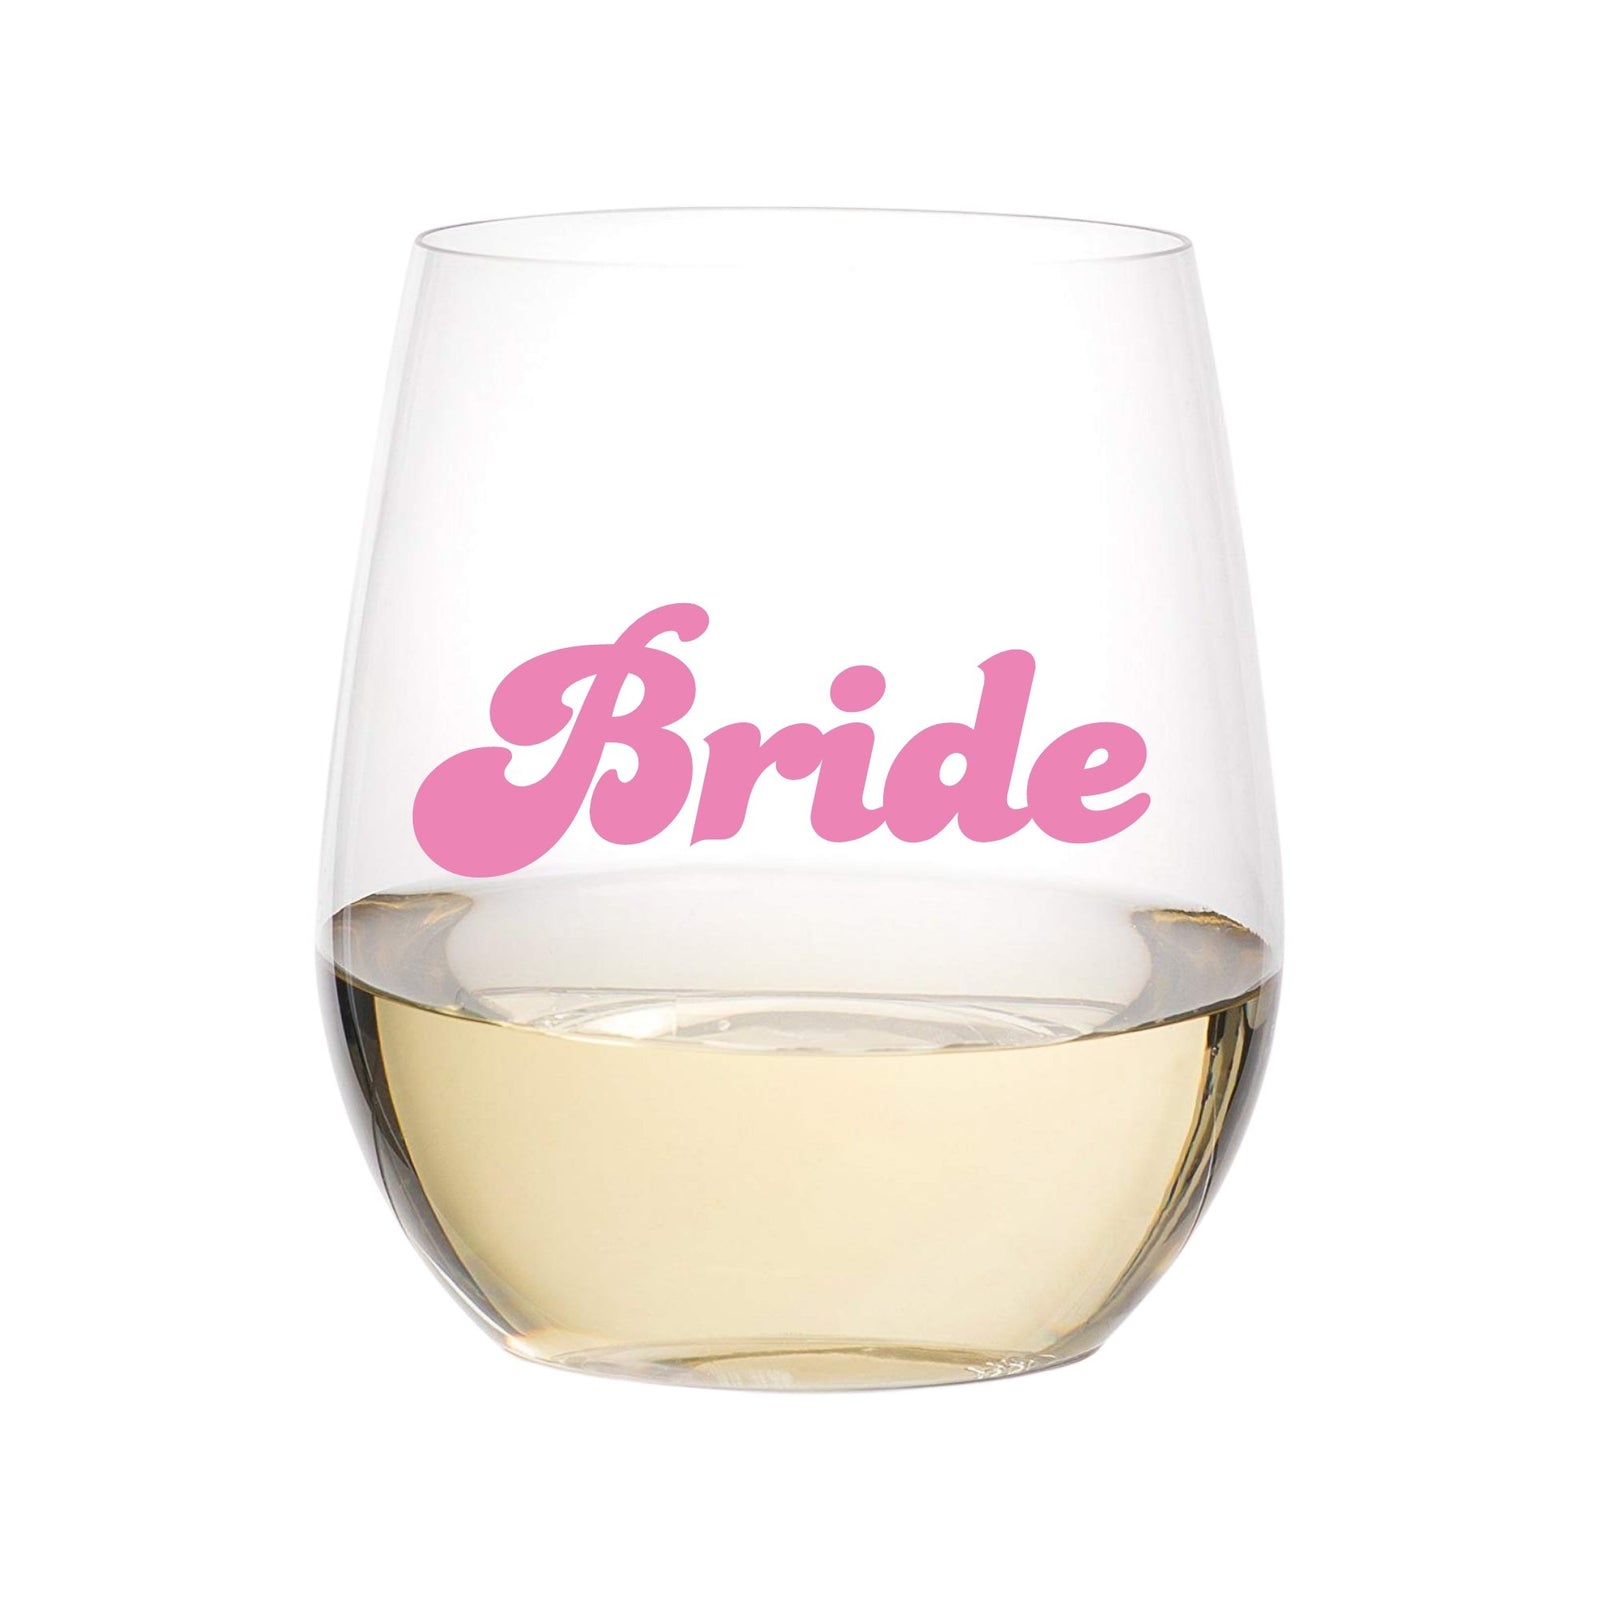 Bride's Drinking Team Wine Glass - Bachelorette Party Décor - Bridal Shower  Ideas - Bachelorette Party Wine Glasses